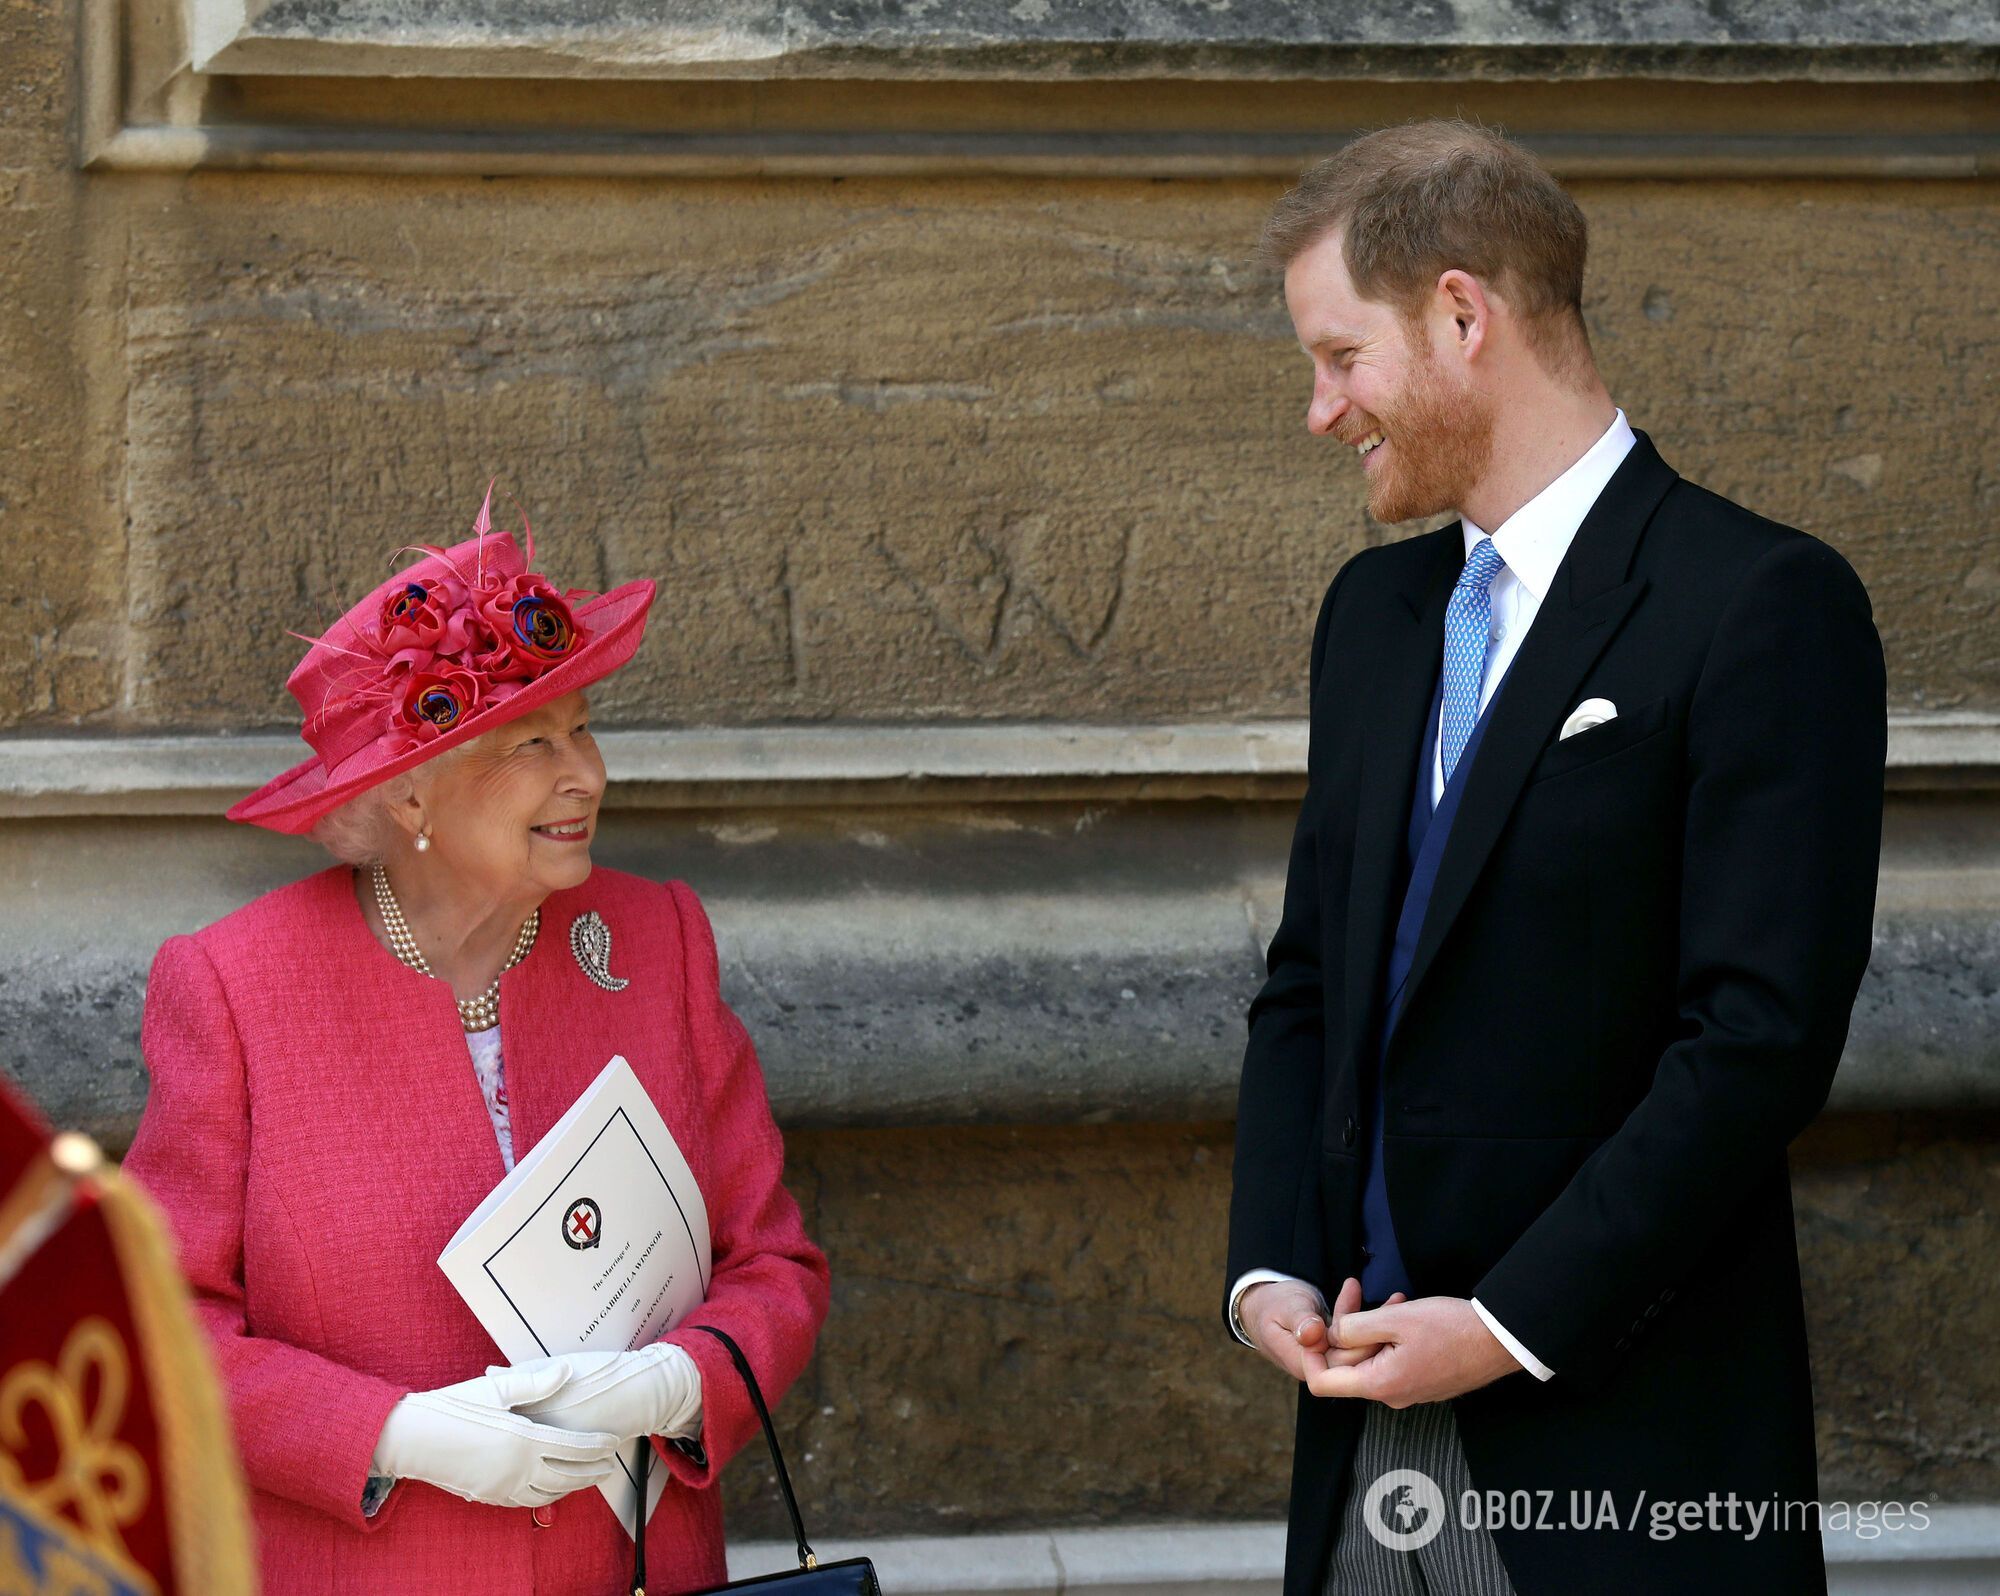 Принц Гарри растрогал обращением к Елизавете II после ее смерти: бабушка, я бесконечно благодарен вам